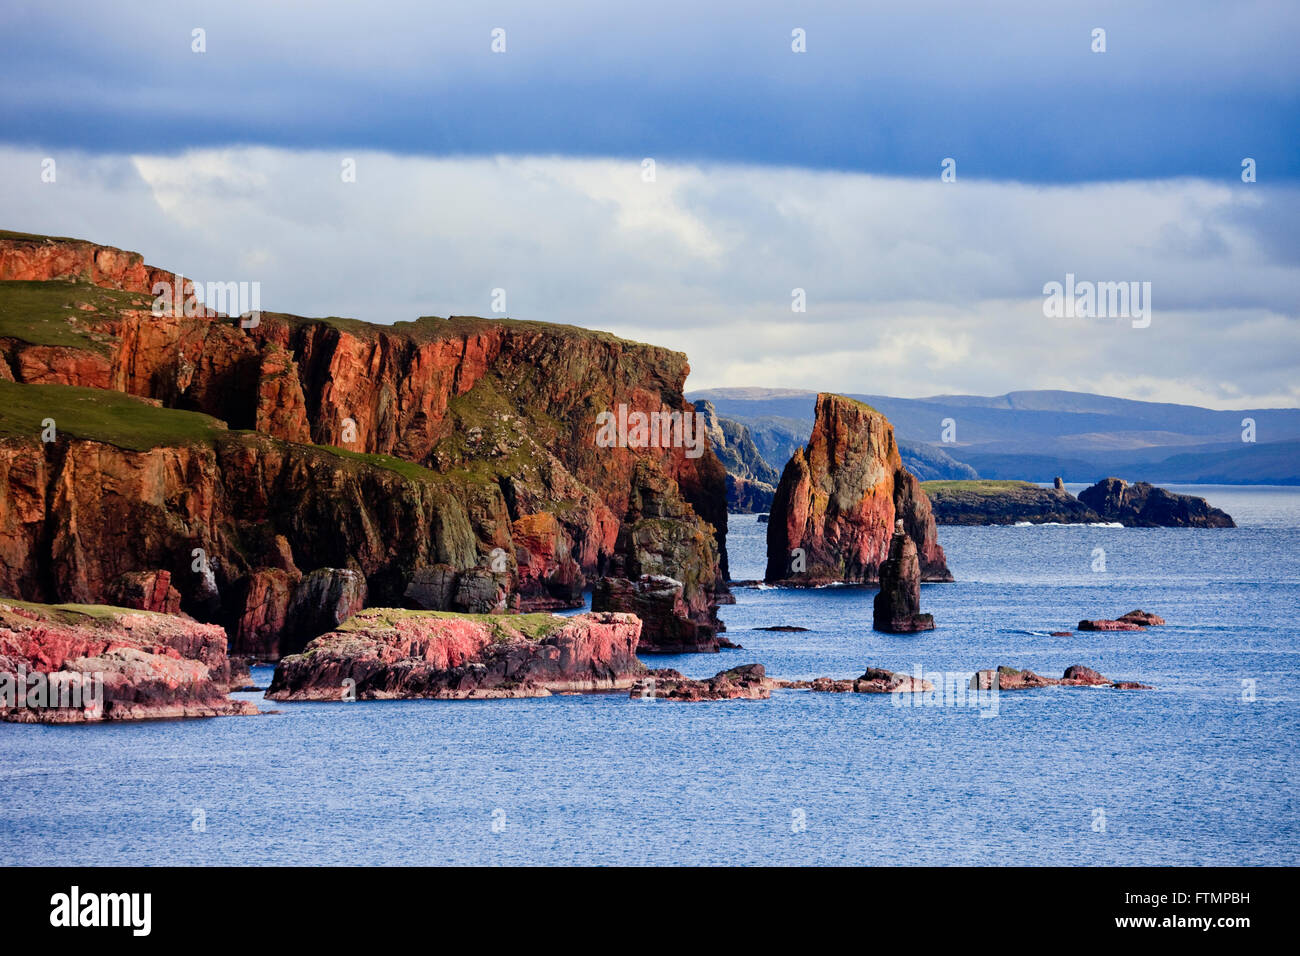 Die Drongs aus rotem Sandstein sea Stacks in Braewick auf atemberaubende robusten schottischen Shetland Küste Landschaft Eshaness Shetland Inseln Schottland Großbritannien Großbritannien Stockfoto